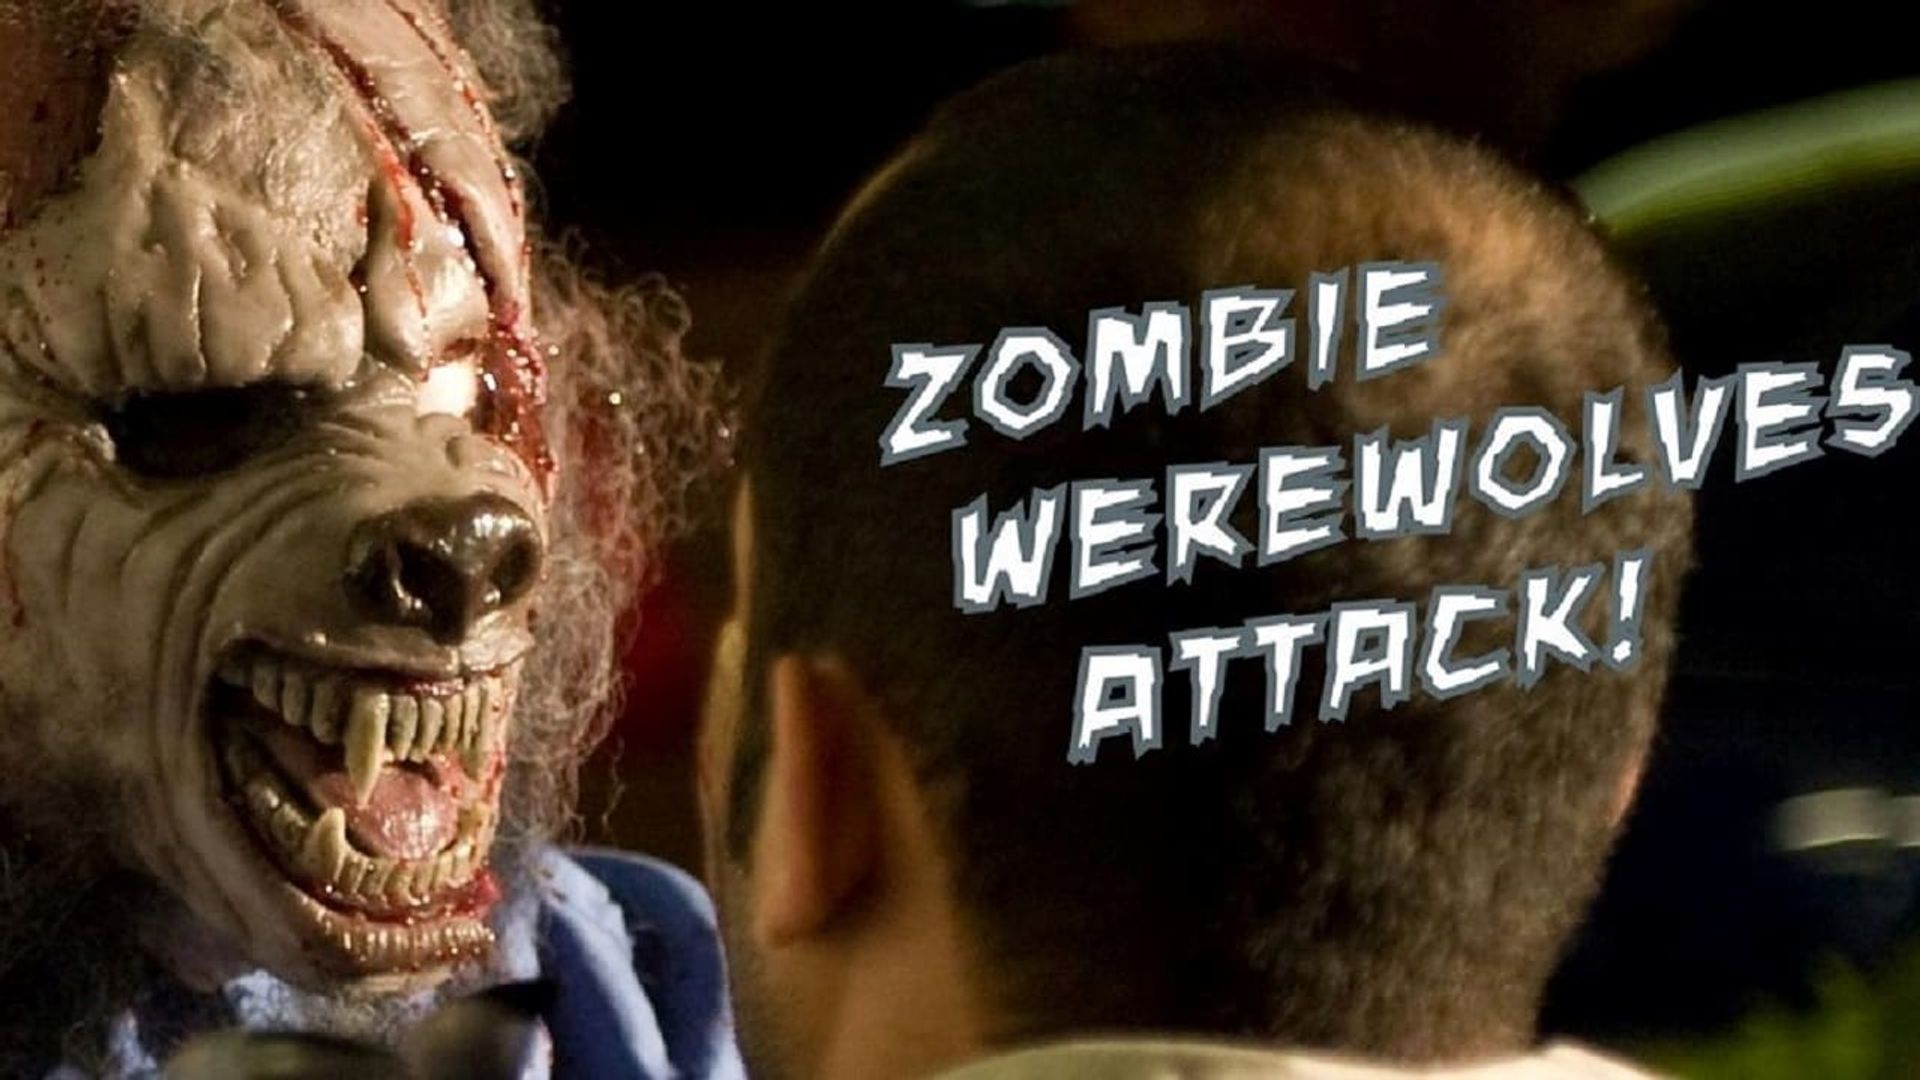 Zombie Werewolves Attack! background